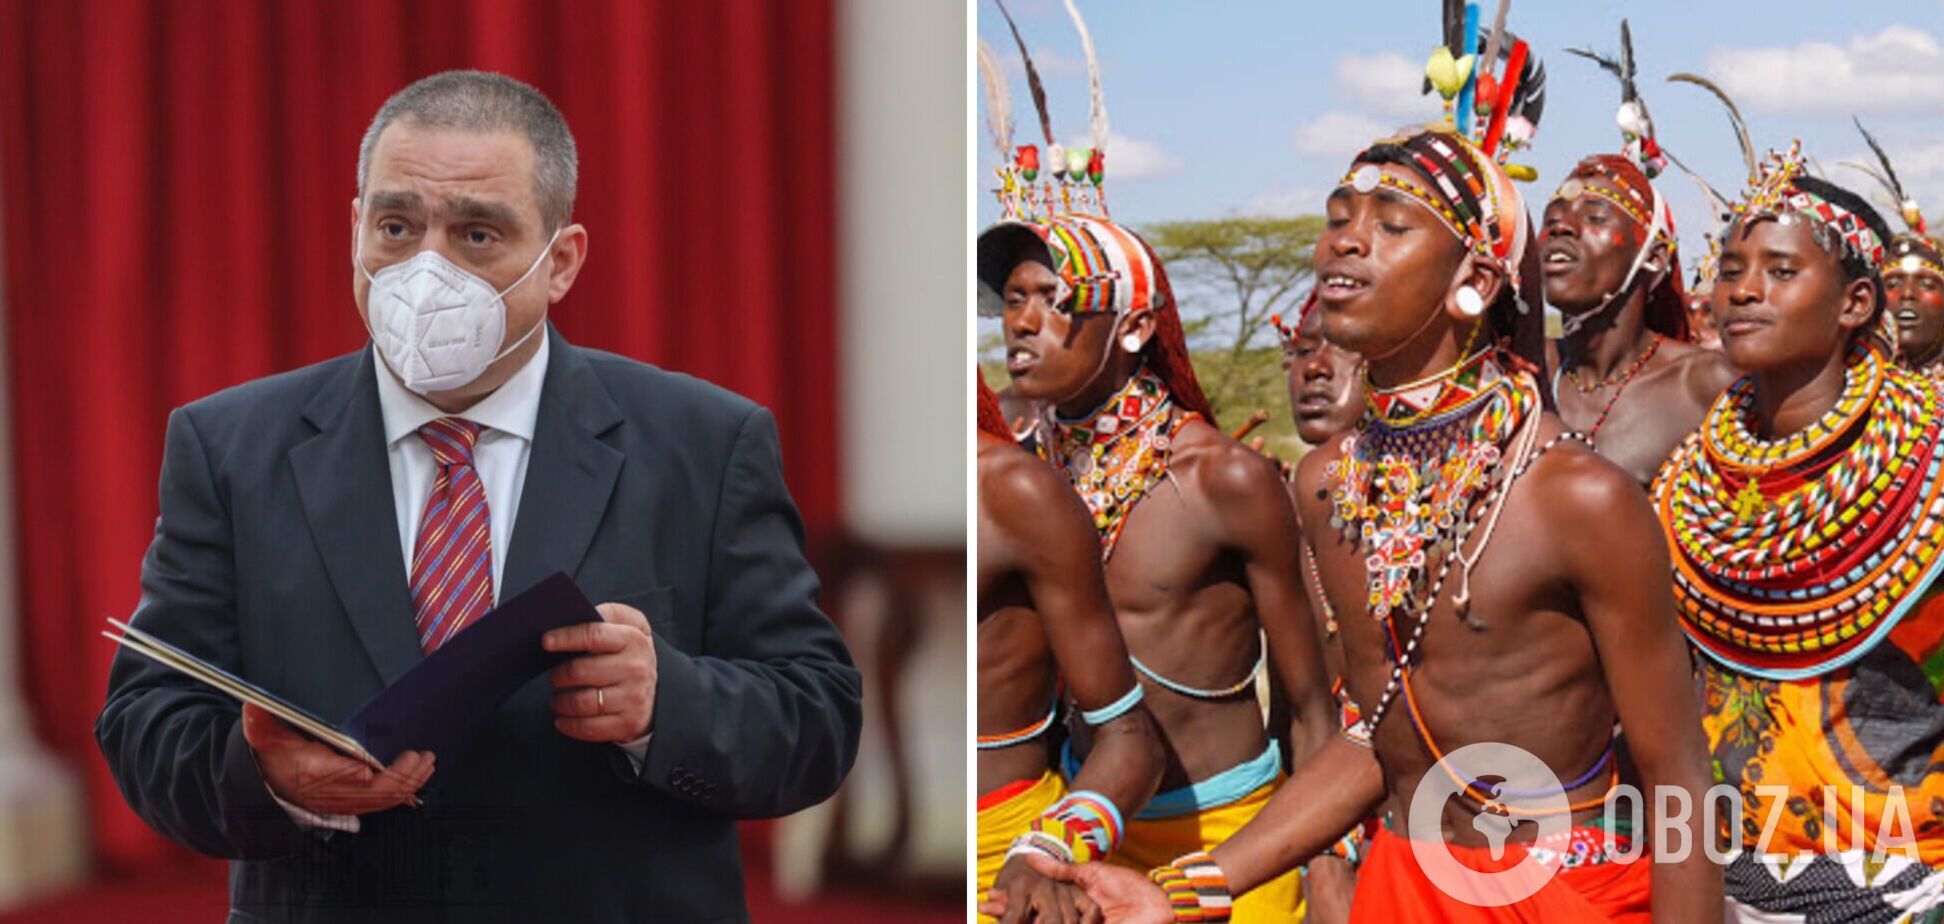 Порівняв африканців із мавпами: посол Румунії у Кенії потрапив у расистський скандал